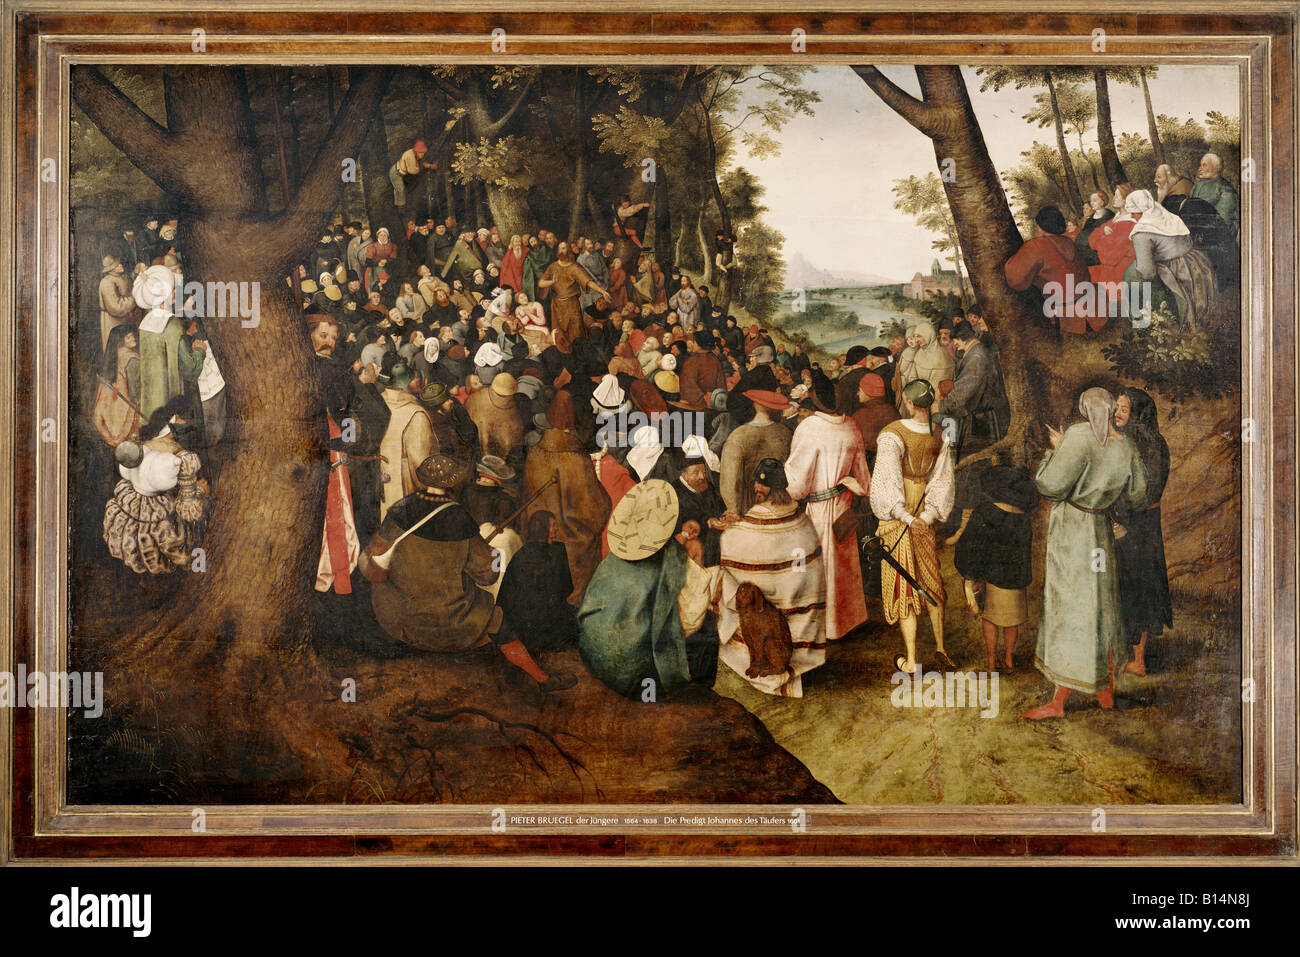 Bildende Kunst, Brueghel, Pieter der jüngere (1564-1638), Malerei, "die Predigt von Johannes dem Täufer", 1601 nach Pieter Bru Stockfoto